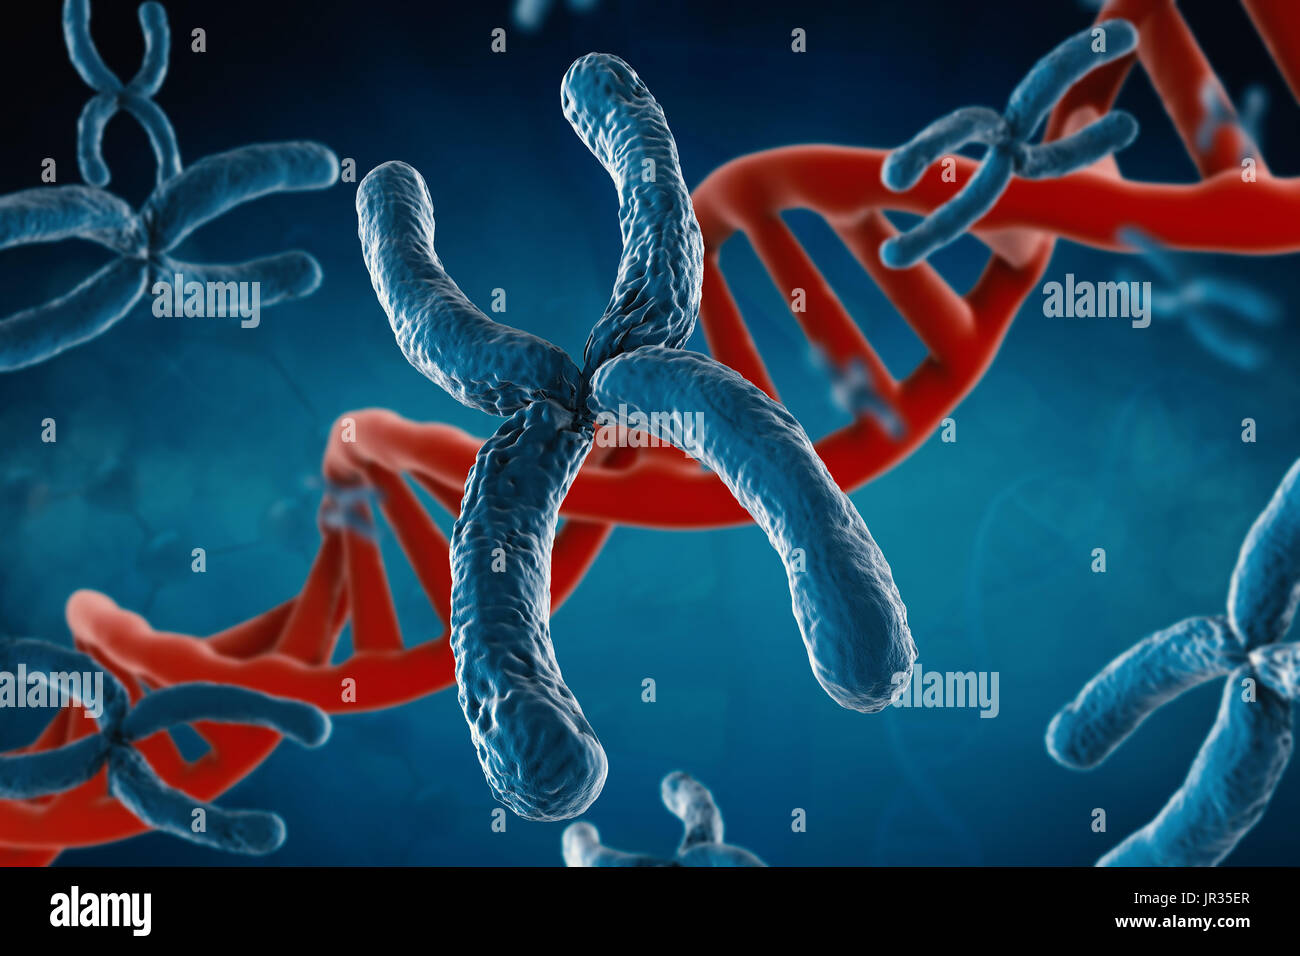 Le rendu 3d avec de l'ADN chromosomique bleu helice sur fond bleu Banque D'Images